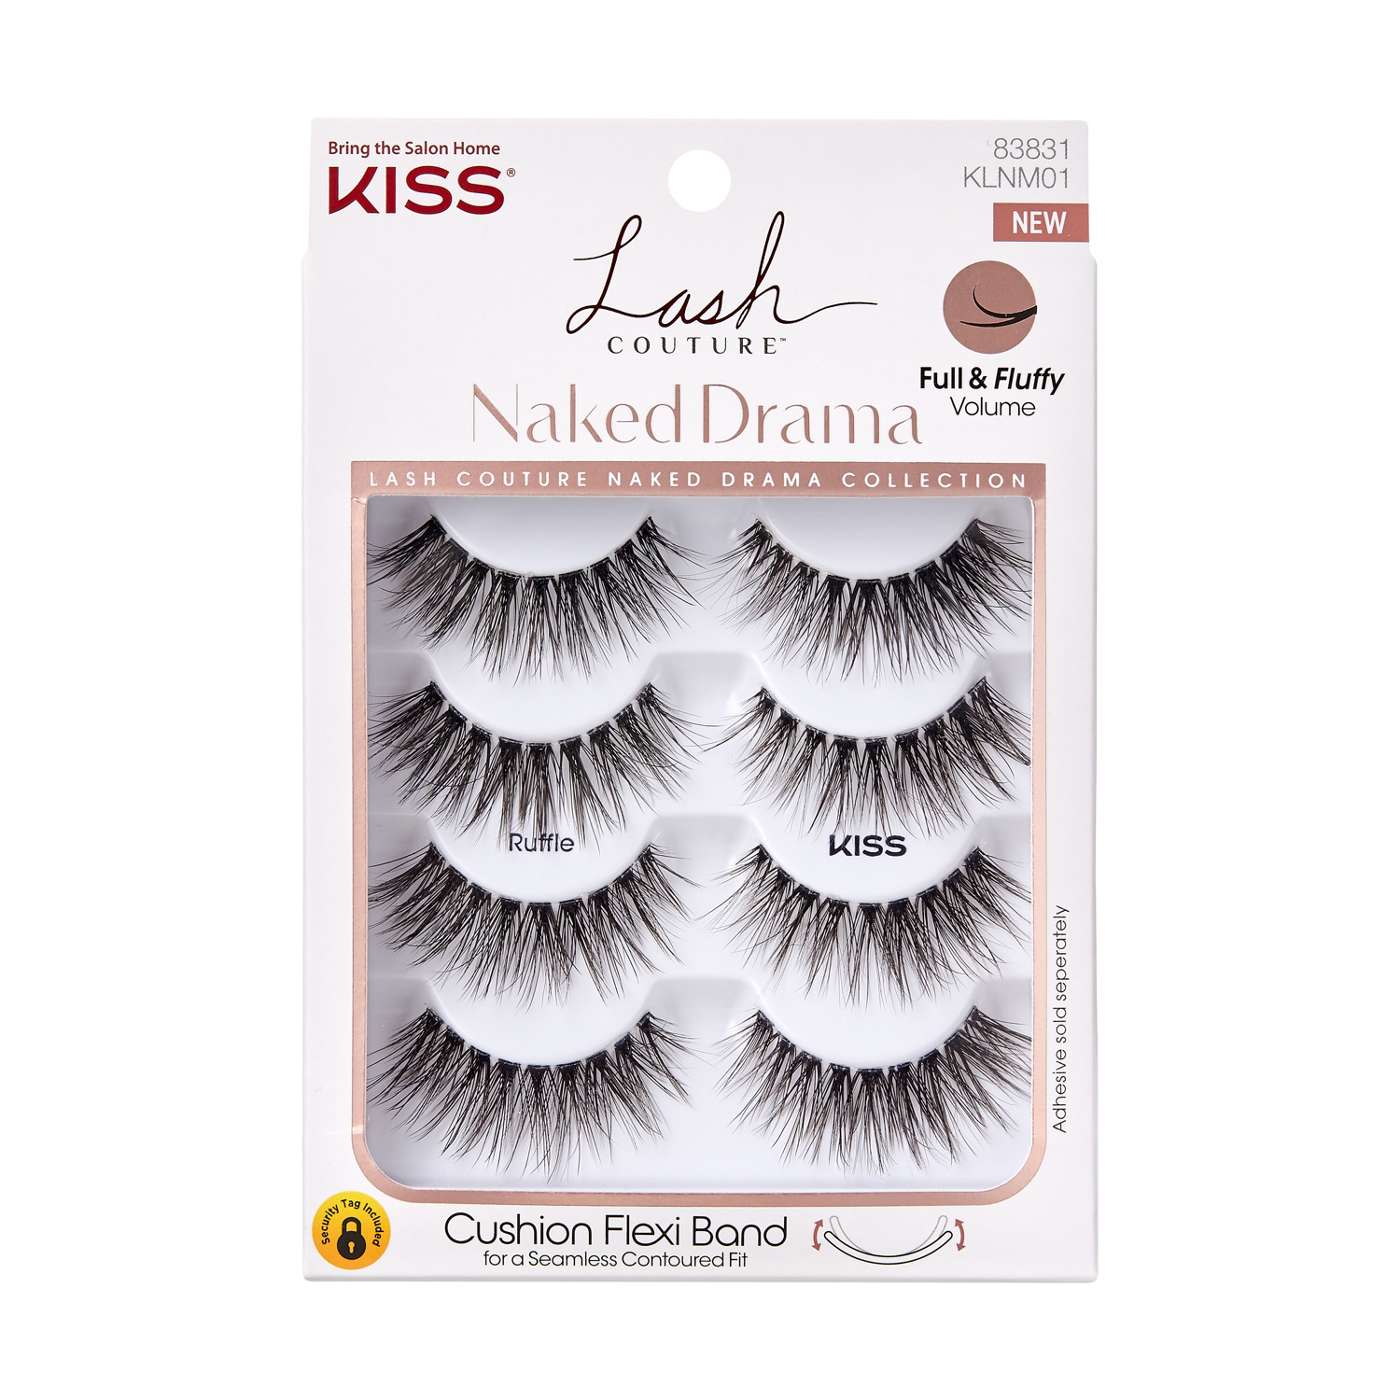 KISS Lash Couture Naked Drama Eyelashes - Ruffle; image 1 of 6